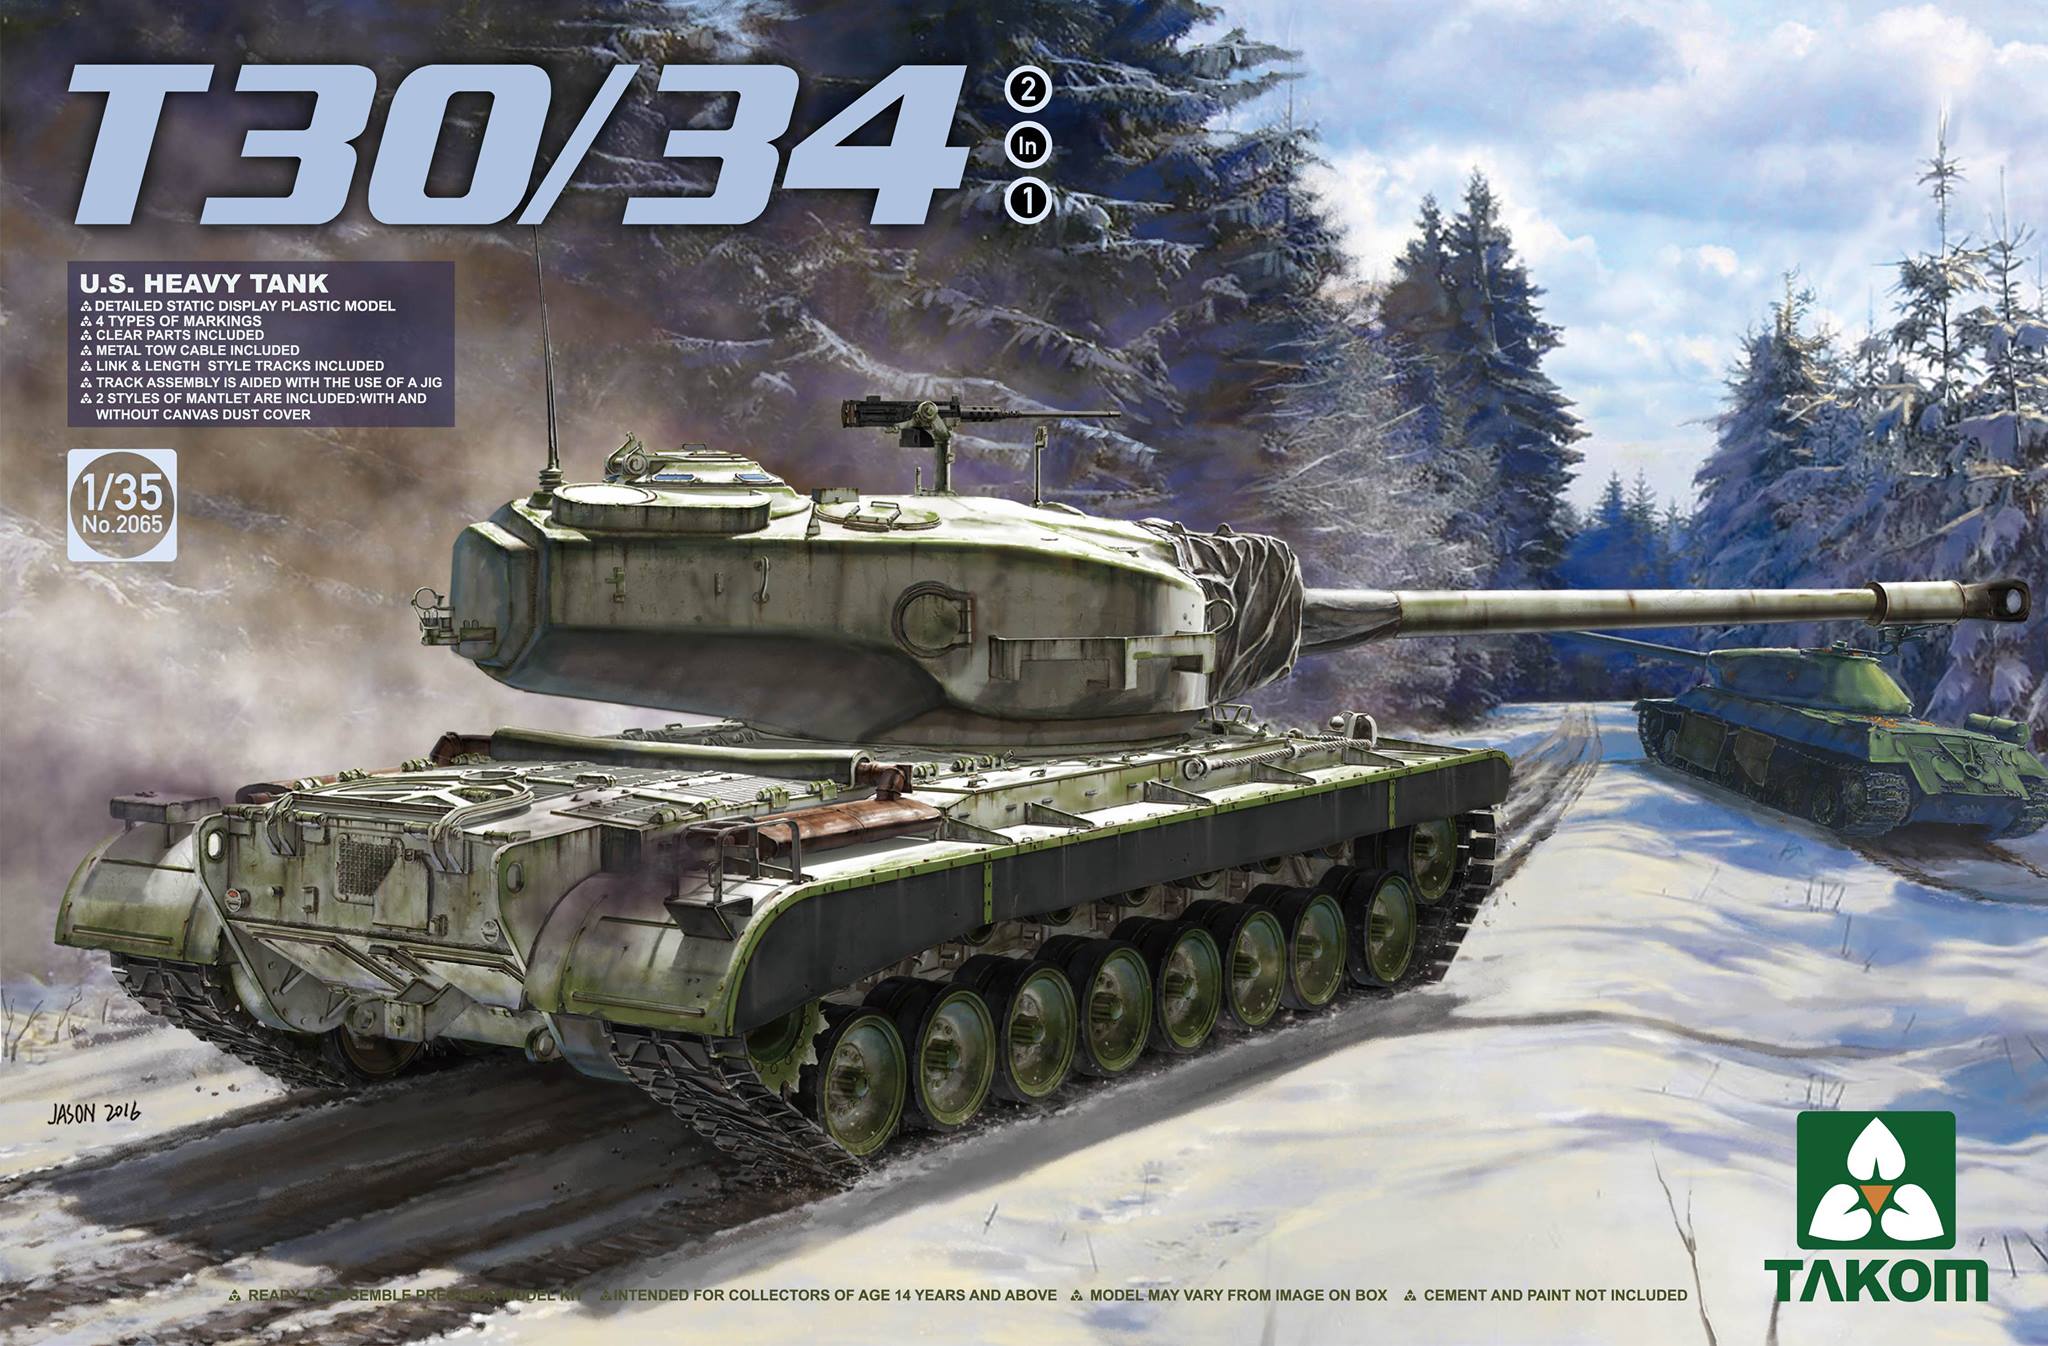 U.S. Heavy Tank T30/34 (2 in 1)